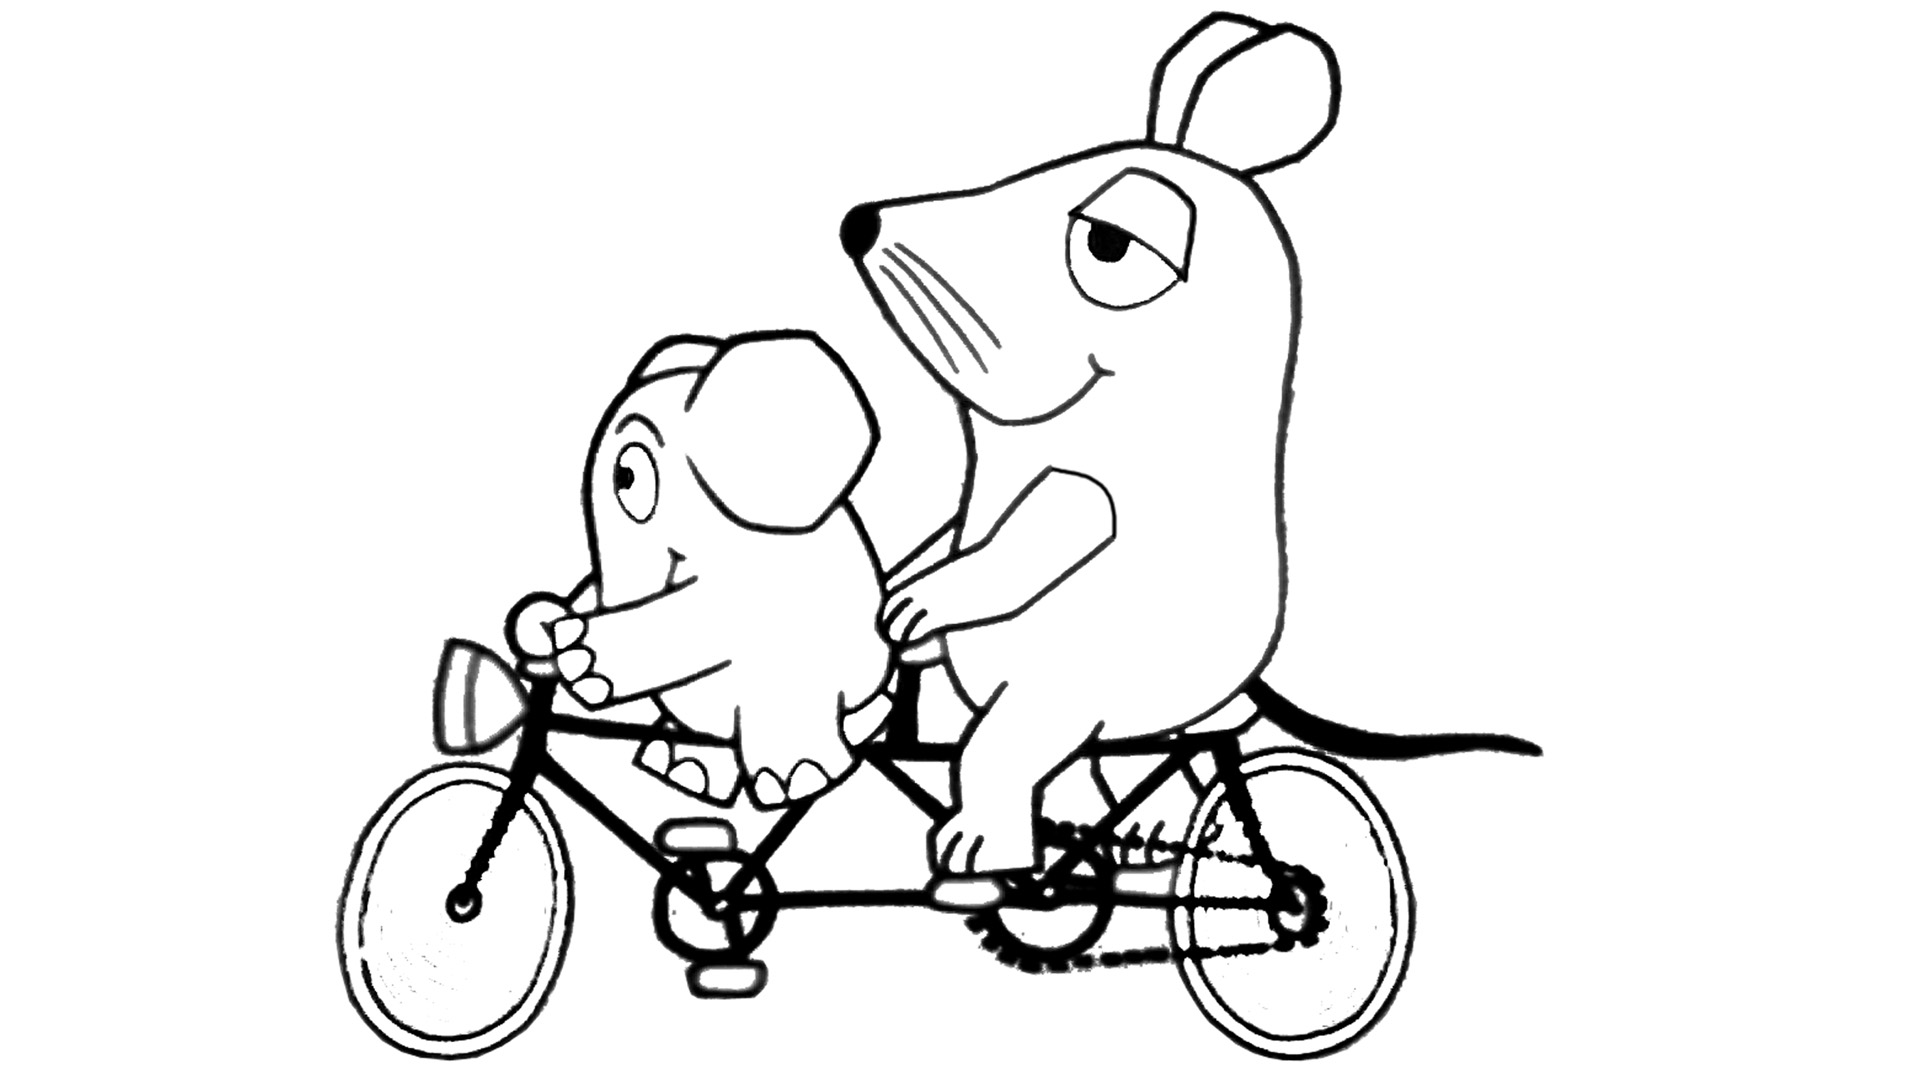 Fahrrad 9 - Die Seite mit der Maus - WDR